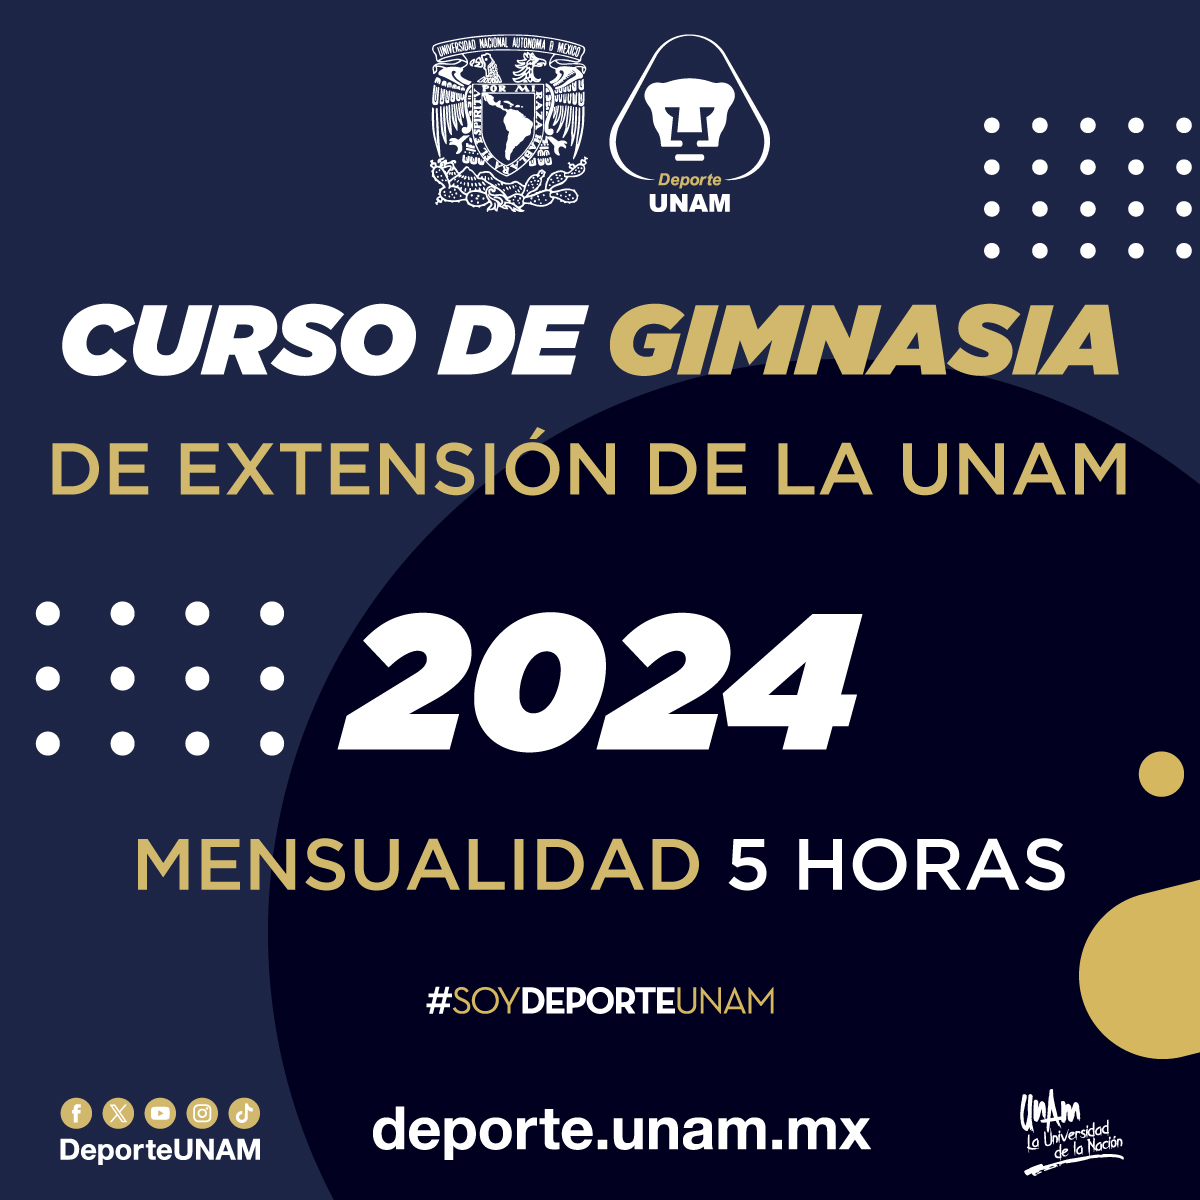 CURSO DE GIMNASIA DE EXTENSIÓN DE LA UNAM 2024 MENSUALIDAD 5 HORAS